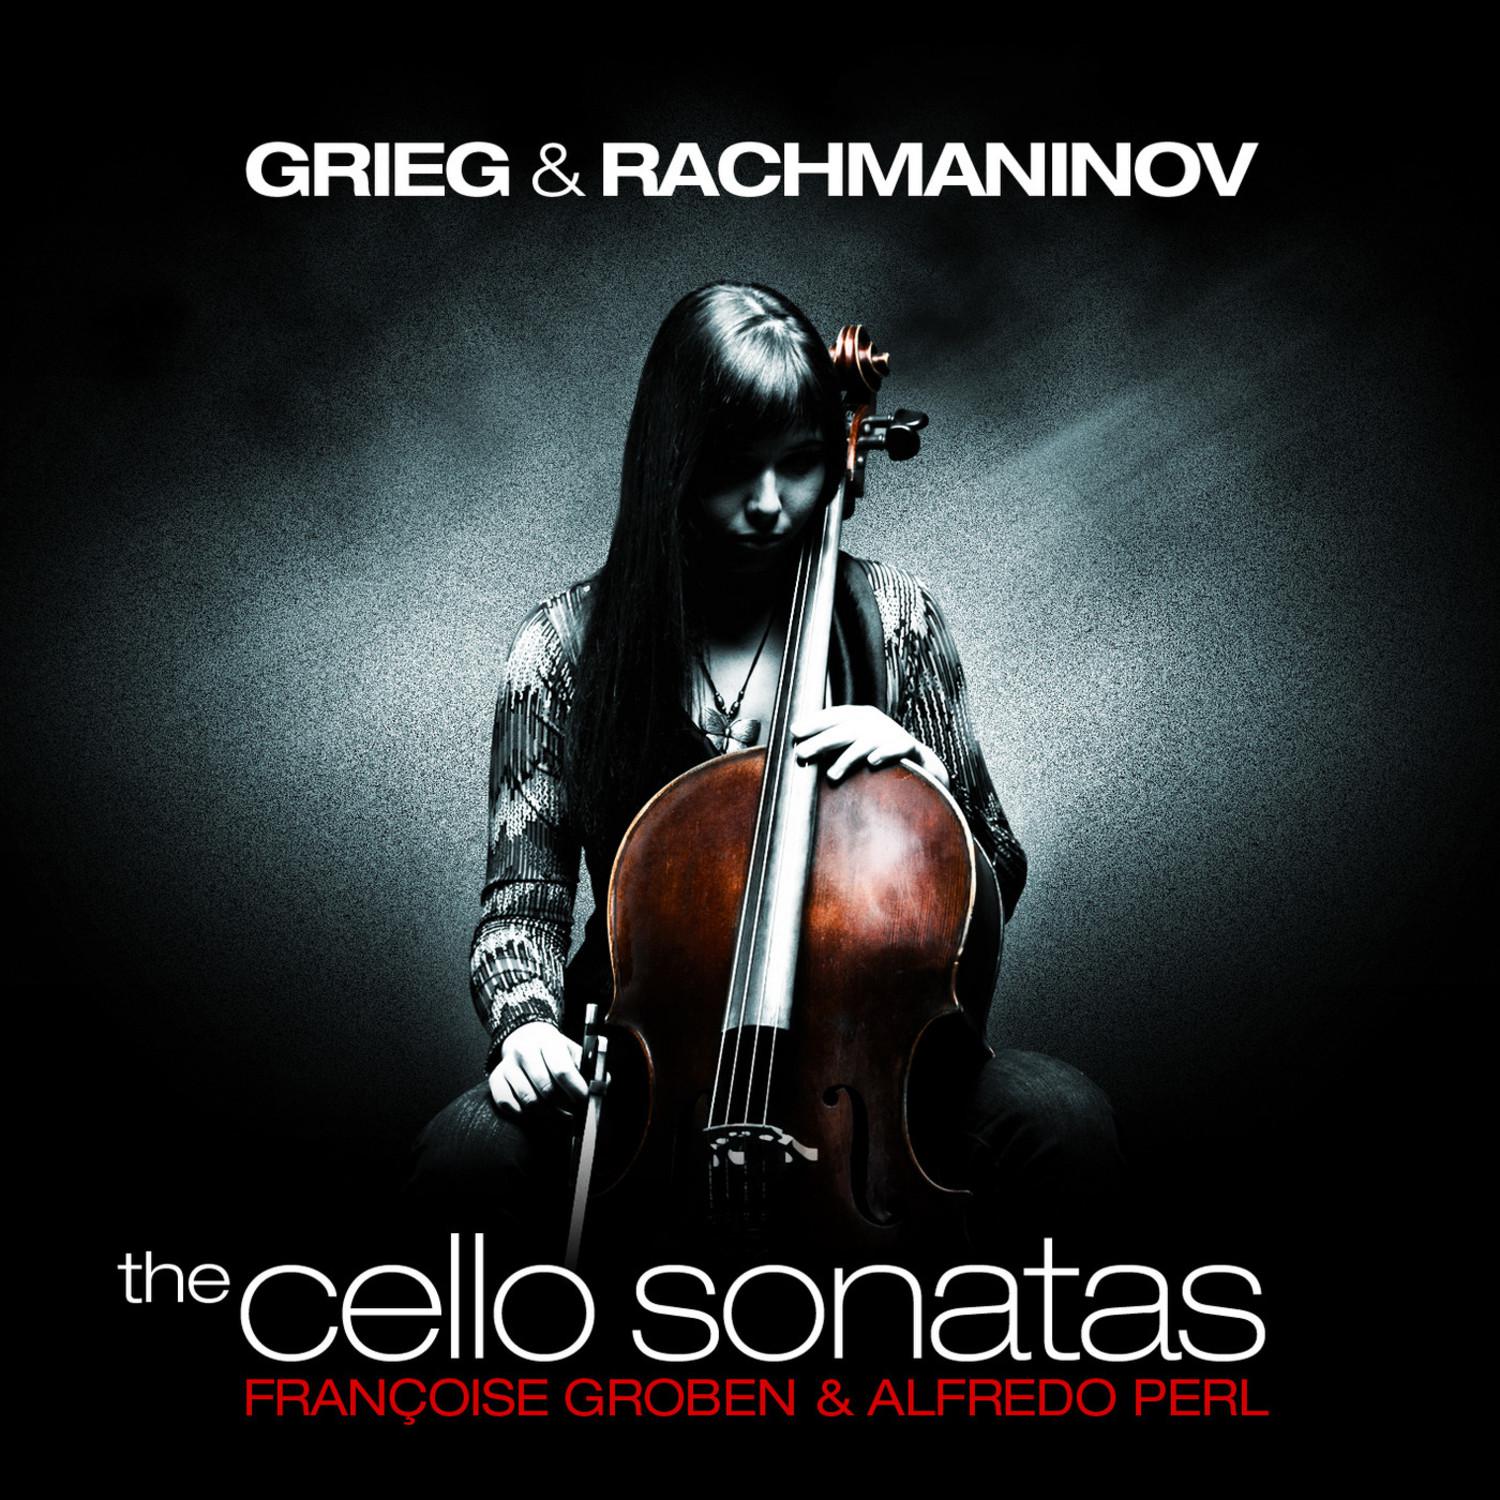 Sonata in G Minor for Cello and Piano, Op. 19: II. Allegro scherzando